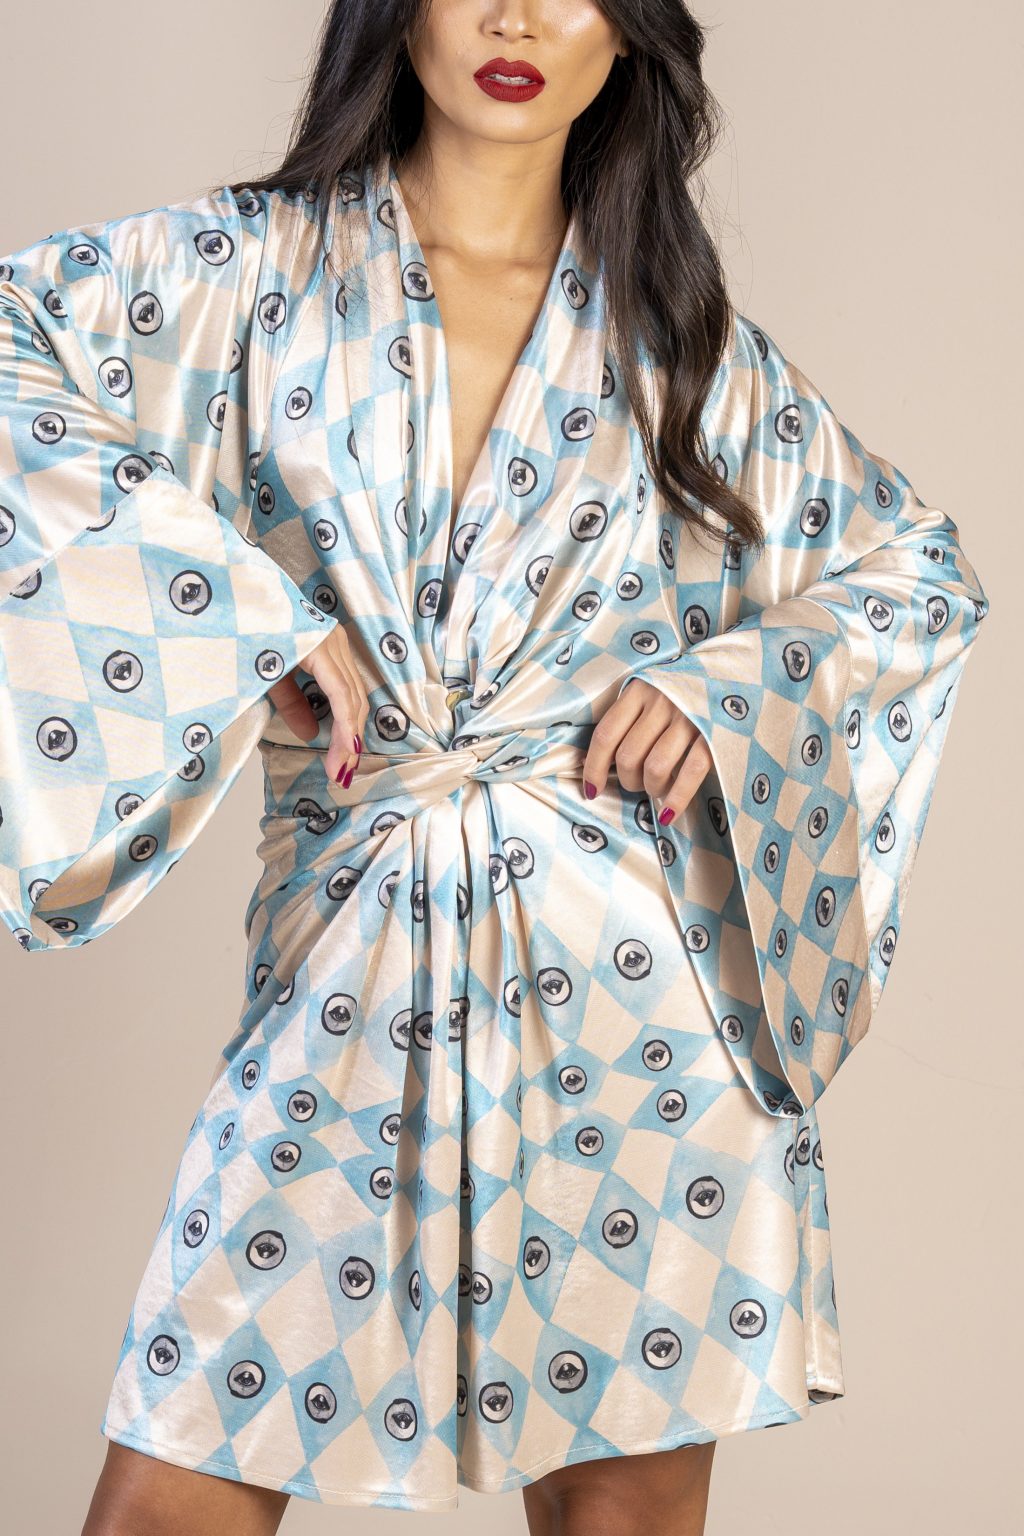 Mulher morena usando um vestido curto manga longa amarração na cintura estampa exclusiva losango bege e azul com olhos desenhados a mão exclusivo conforto elegância praticidade maria sanz kimono quimono joker